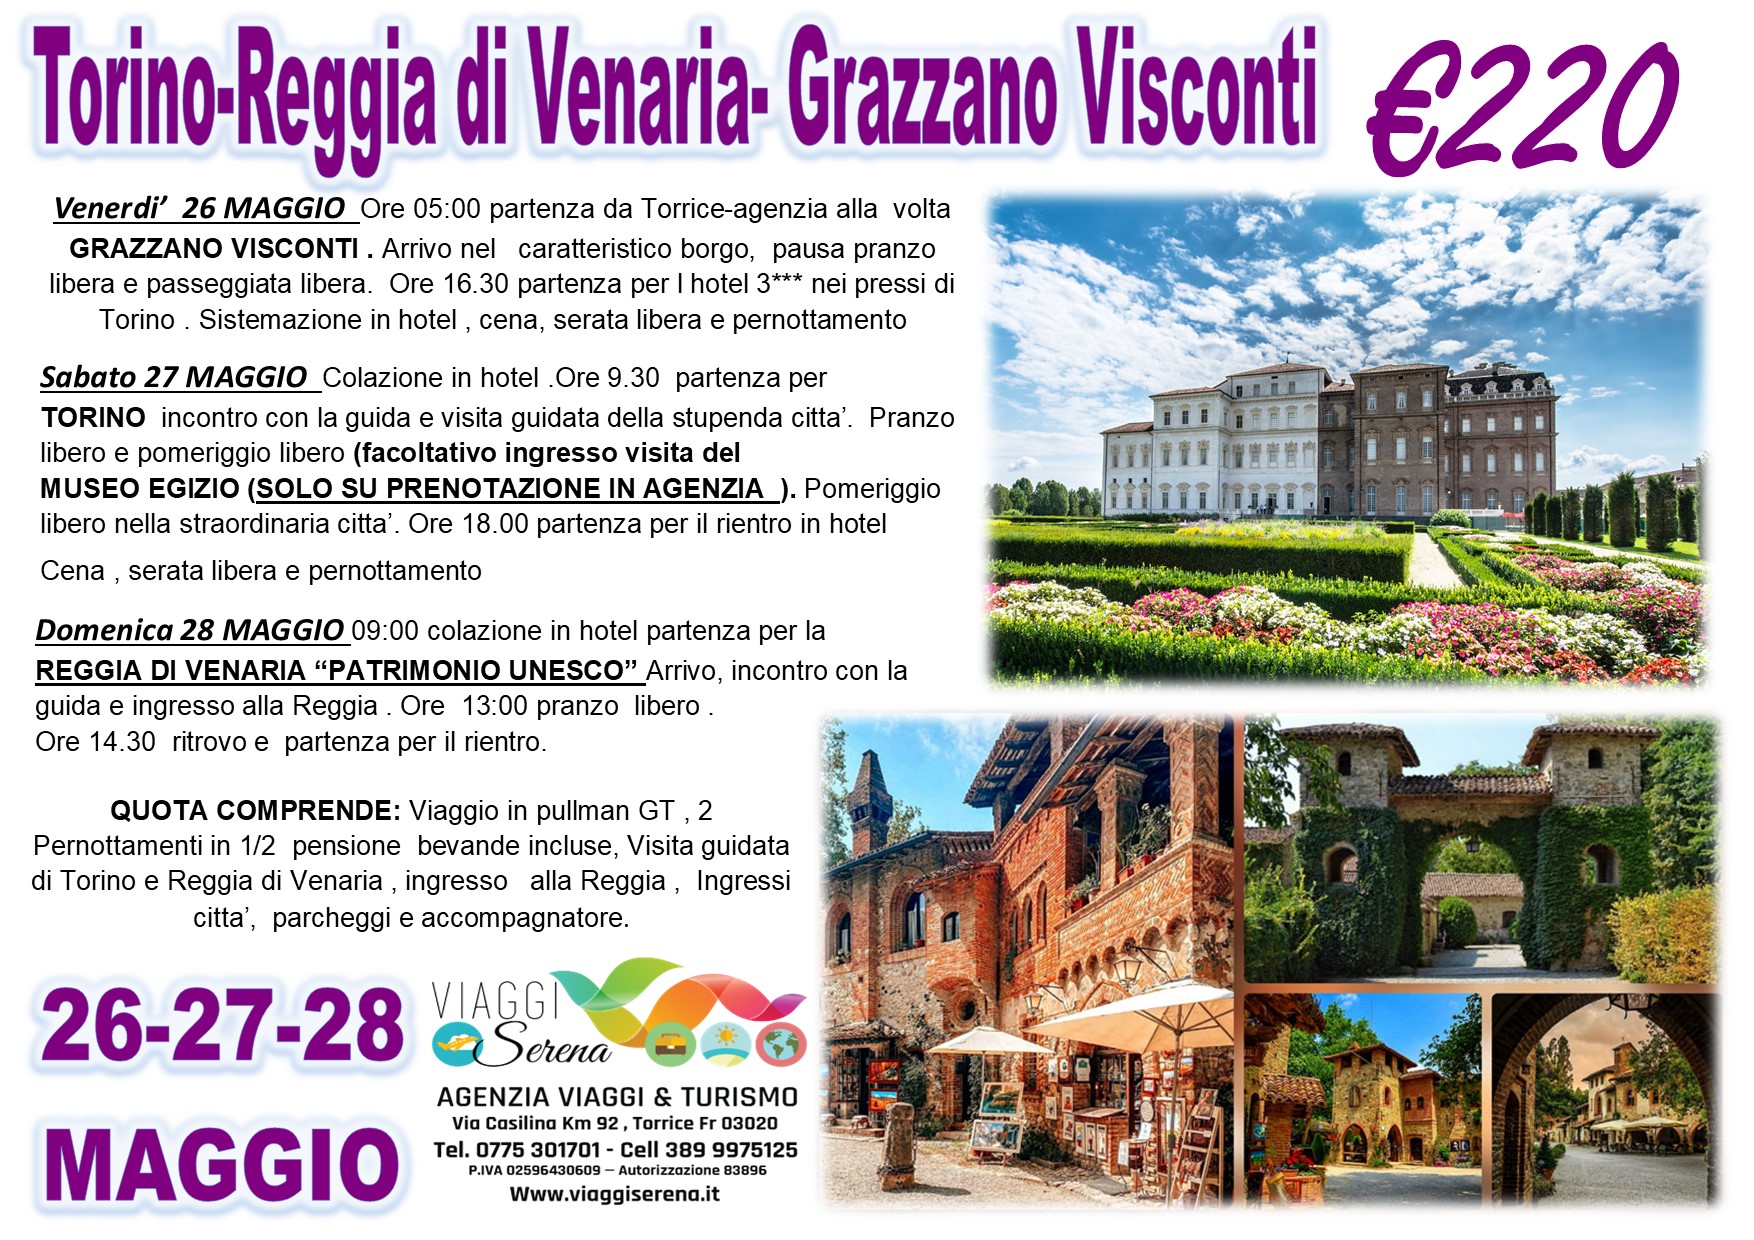 Viaggi di Gruppo: Torino, Reggia di Venaria & Grazzano Visconti  26-27-28 Maggio € 220,00